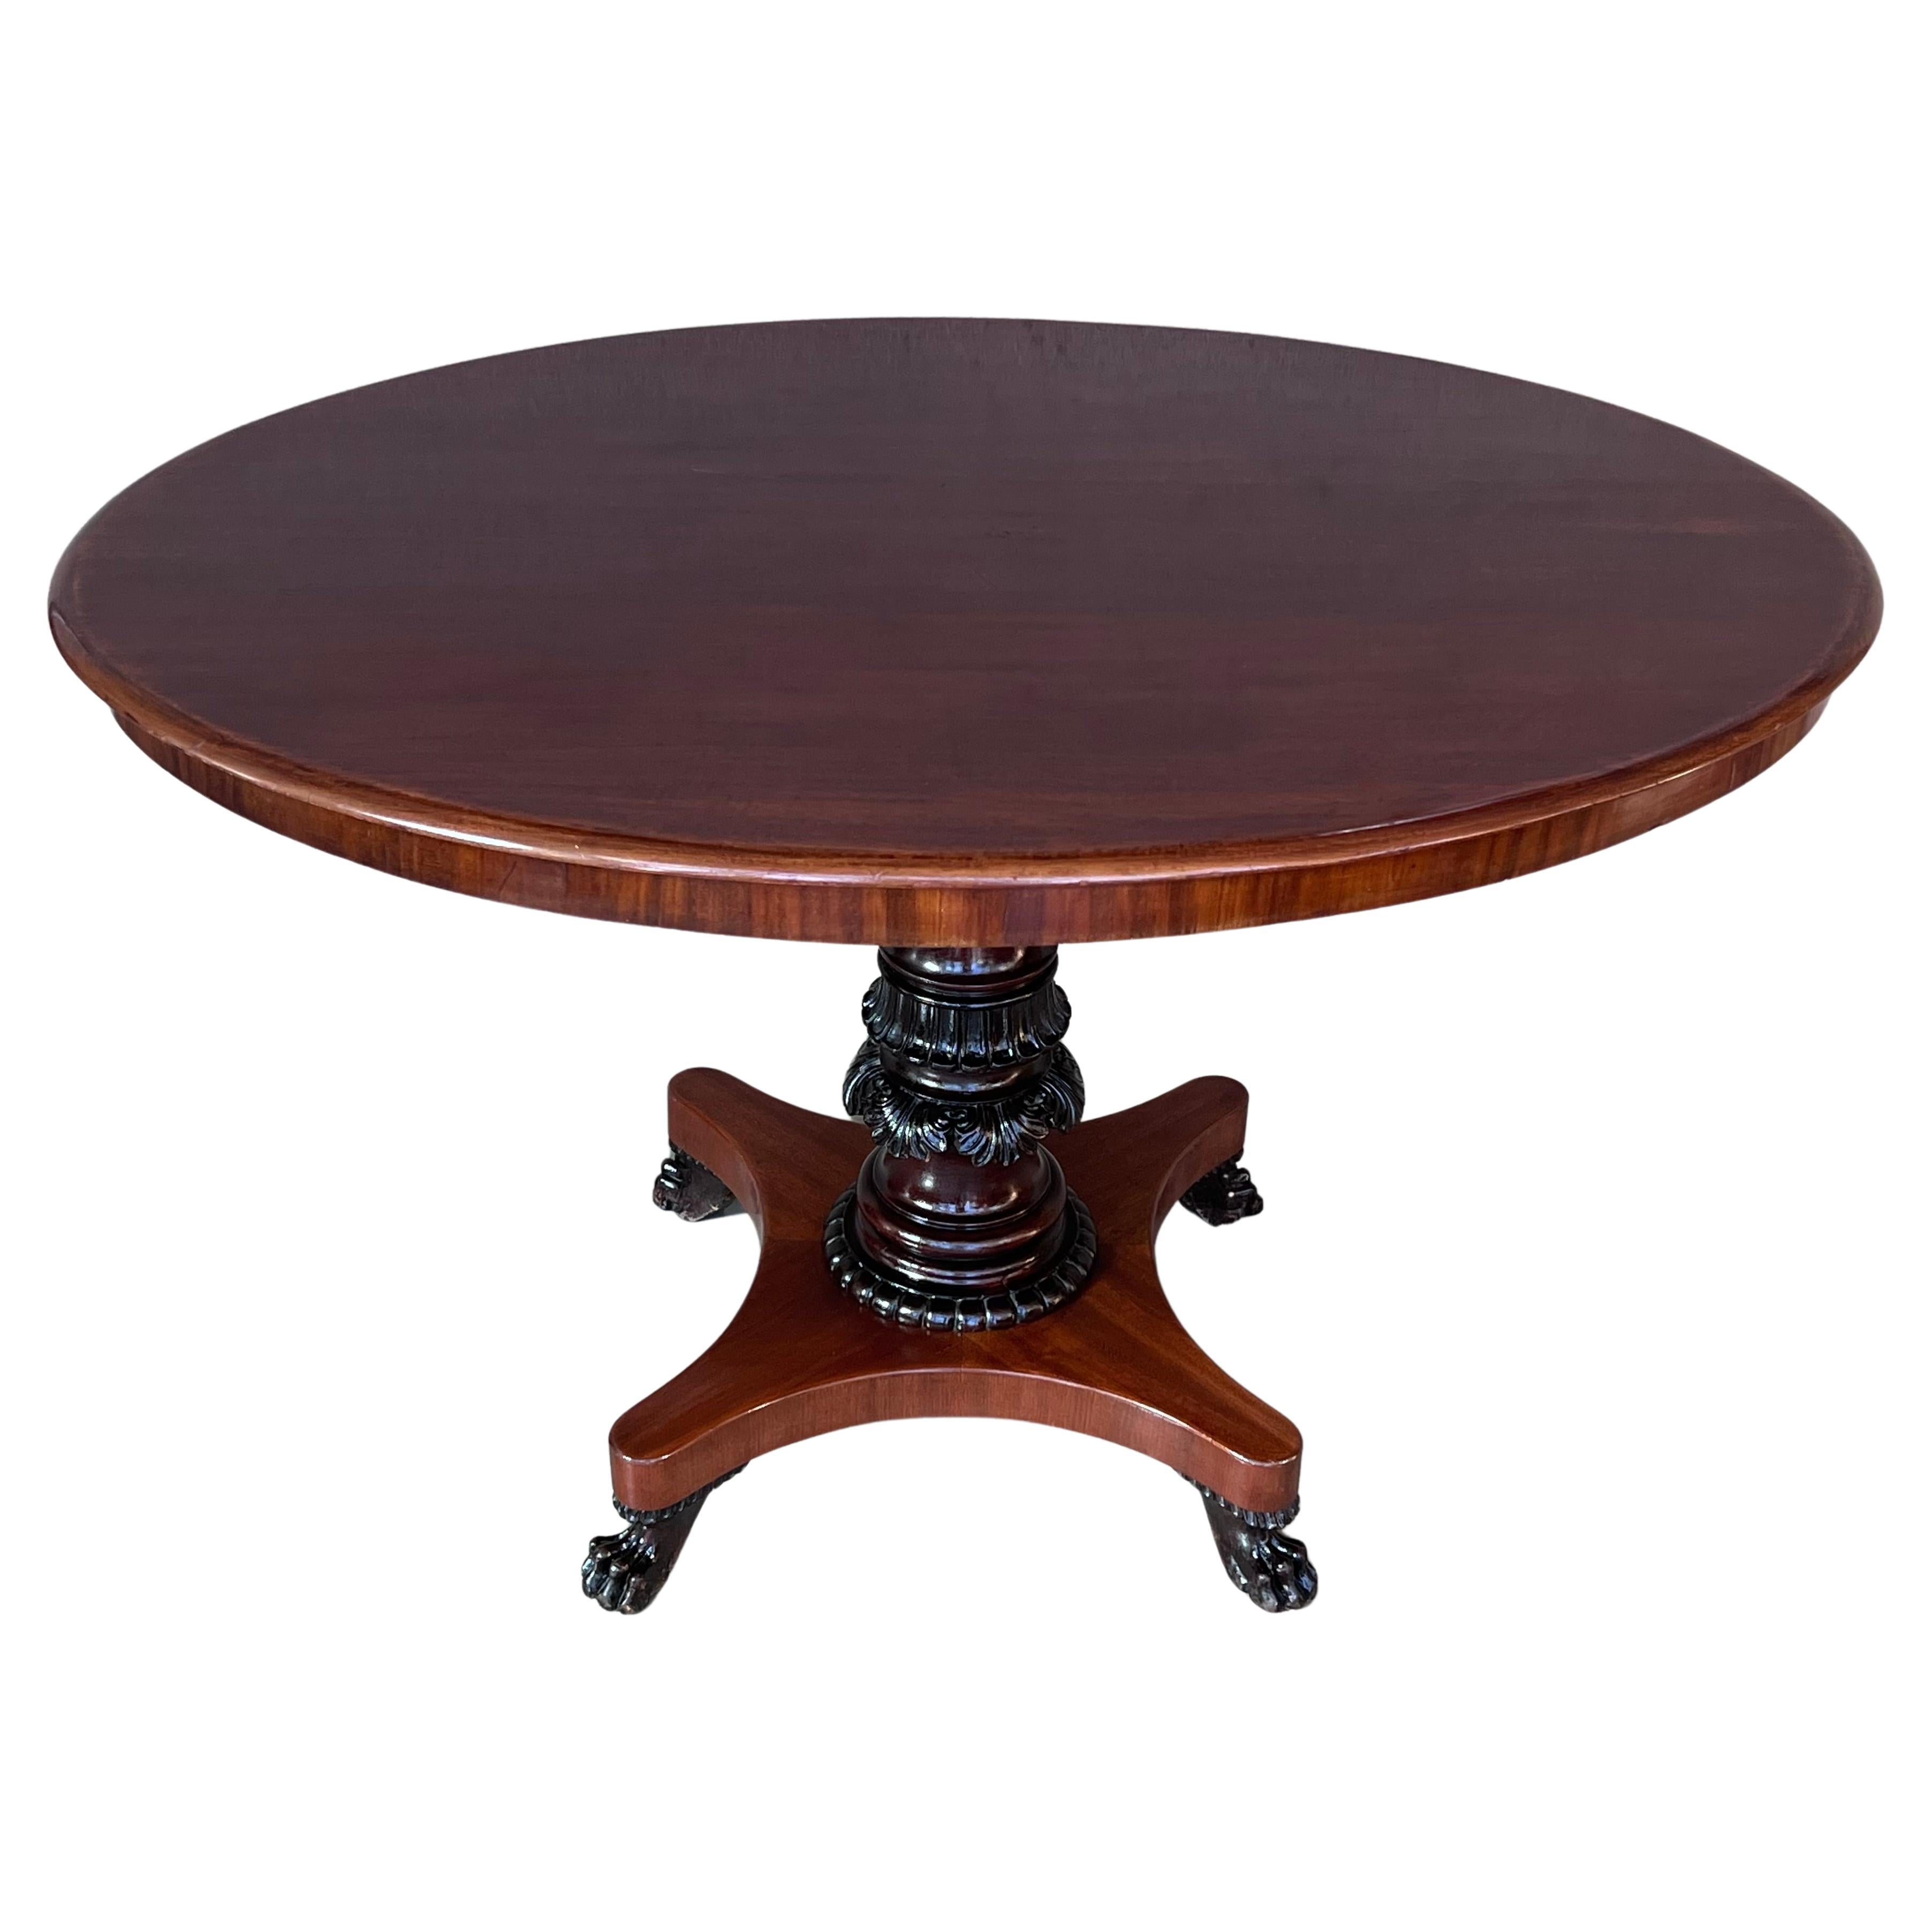 Mahogany, Oval Table, circa the 19th Century